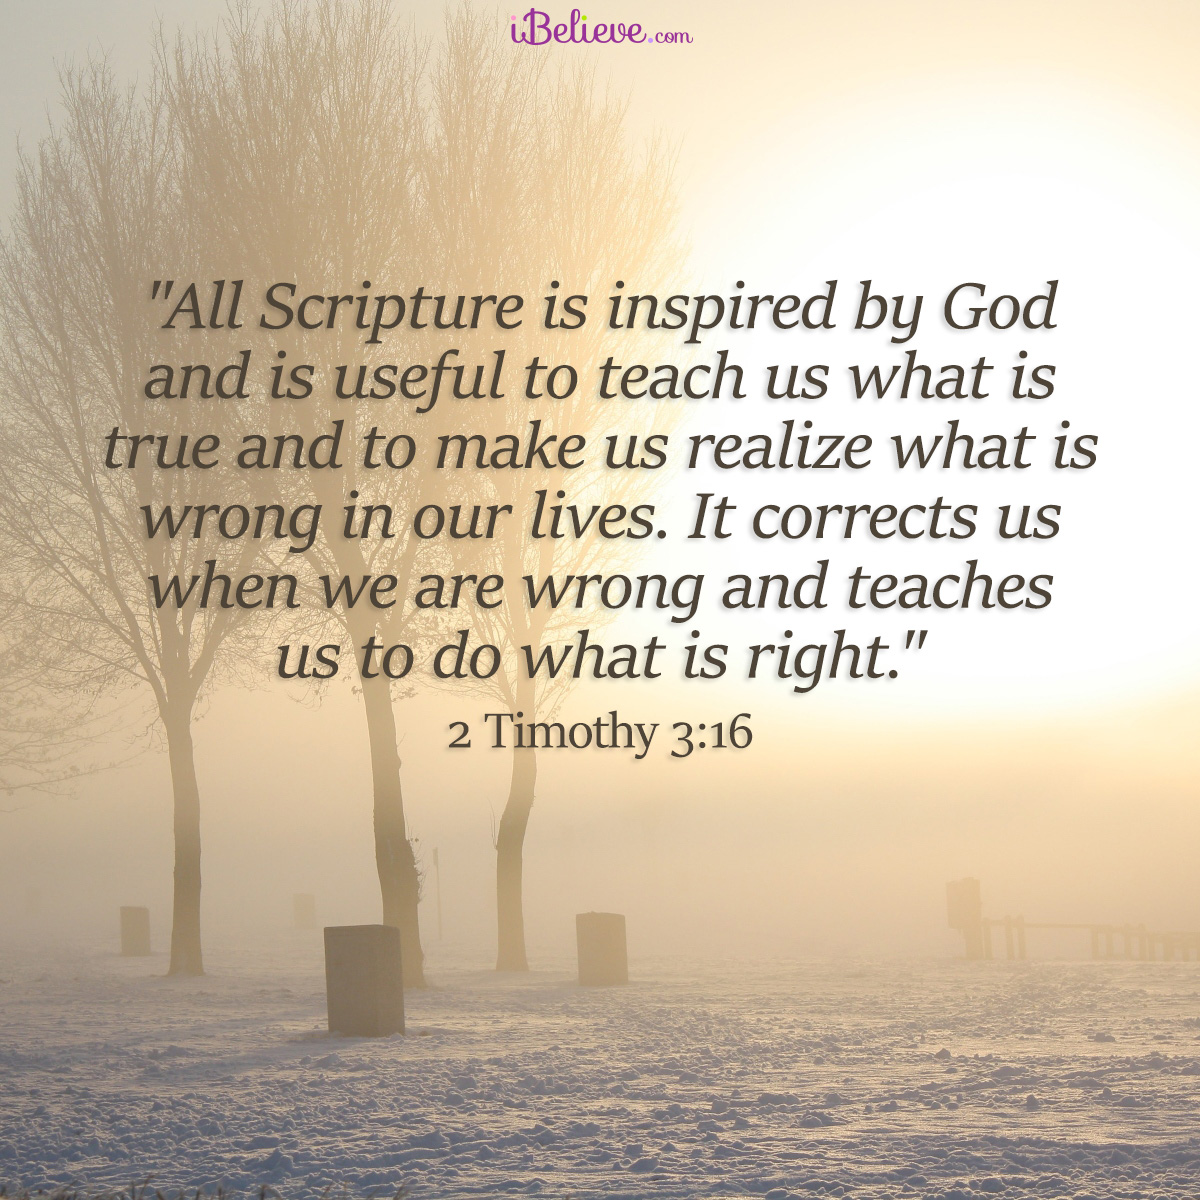 2 Timothy 3:16, inspirational image